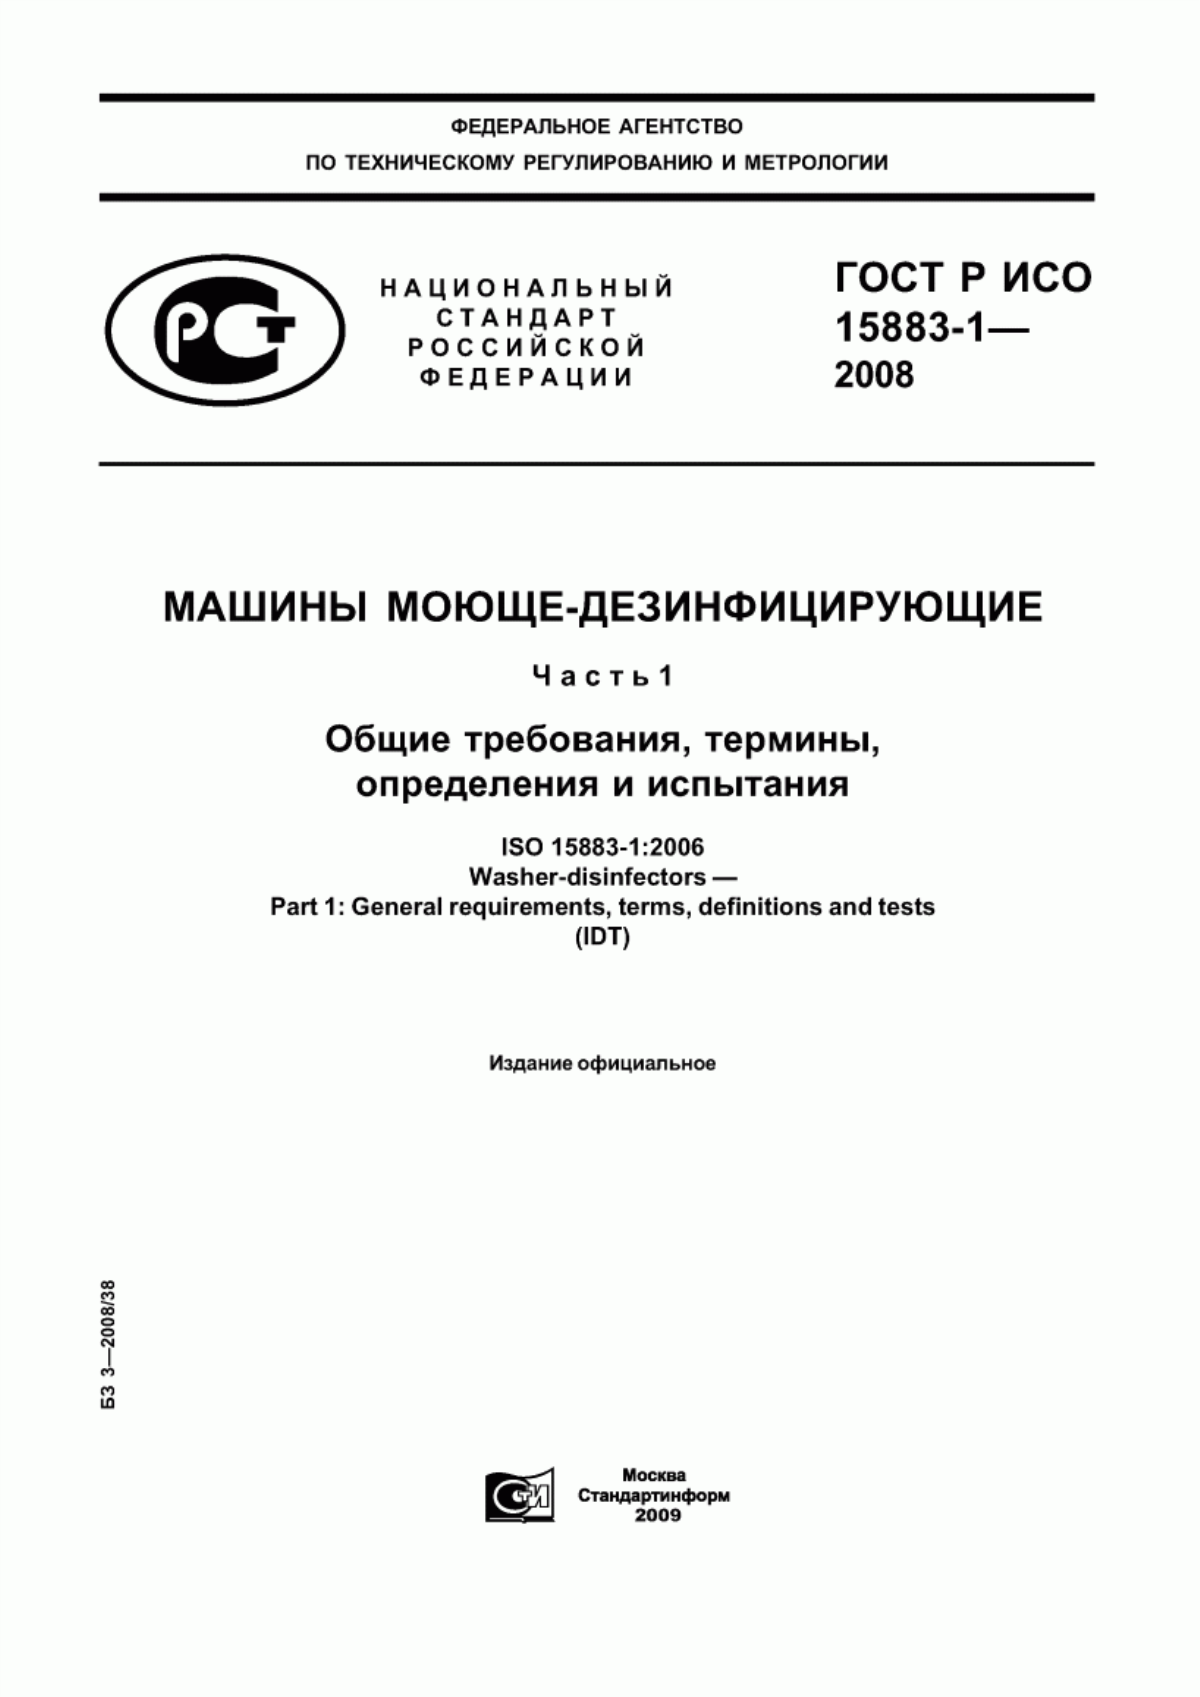 ГОСТ Р ИСО 15883-1-2008 Машины моюще-дезинфицирующие. Часть 1. Общие требования, термины, определения и испытания